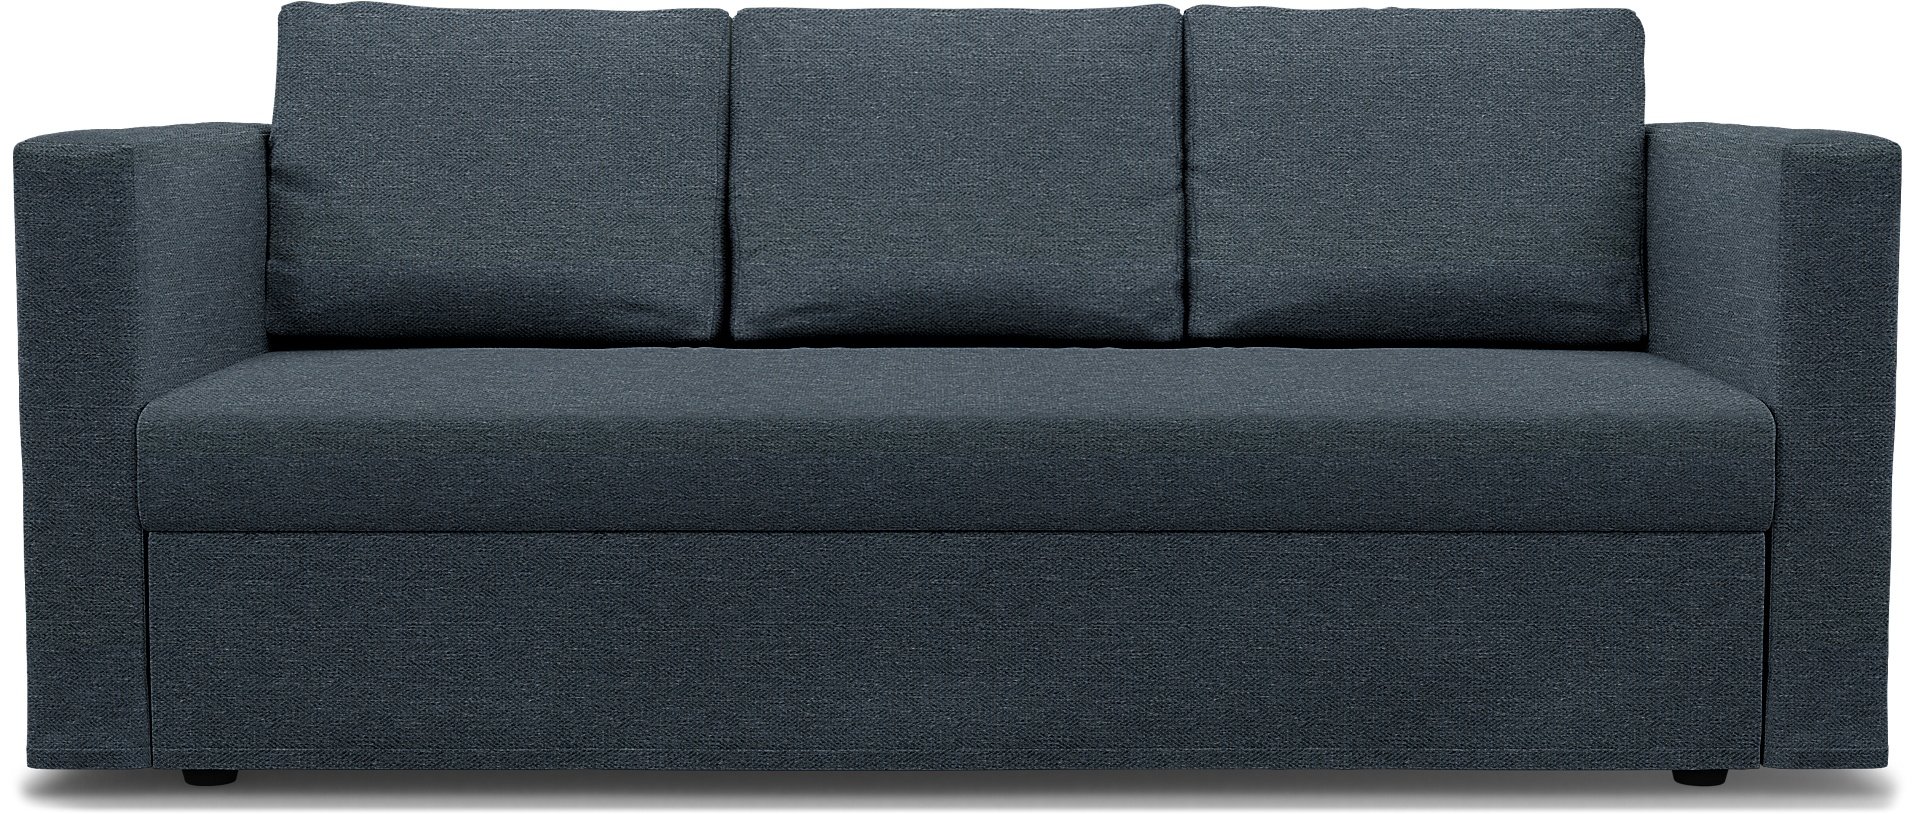 IKEA - Friheten 3 Seater Sofa Bed Cover, Denim, Boucle & Texture - Bemz